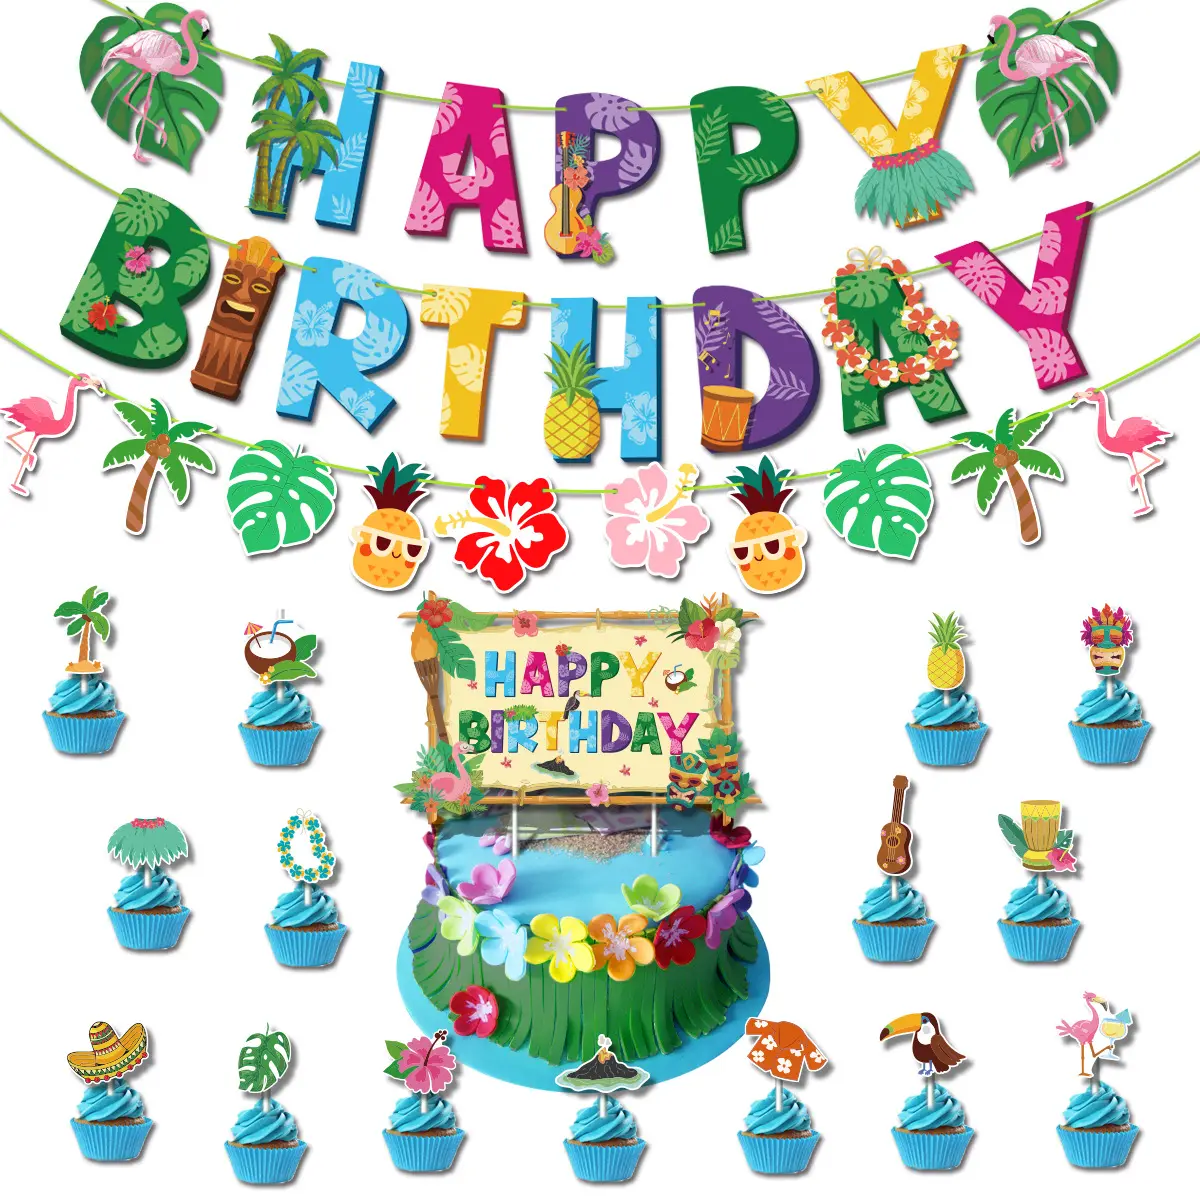 Гавайская пляжная тематическая вечеринка, баннеры для дня рождения, латексные воздушные шары, топпер для торта, товары для дня рождения